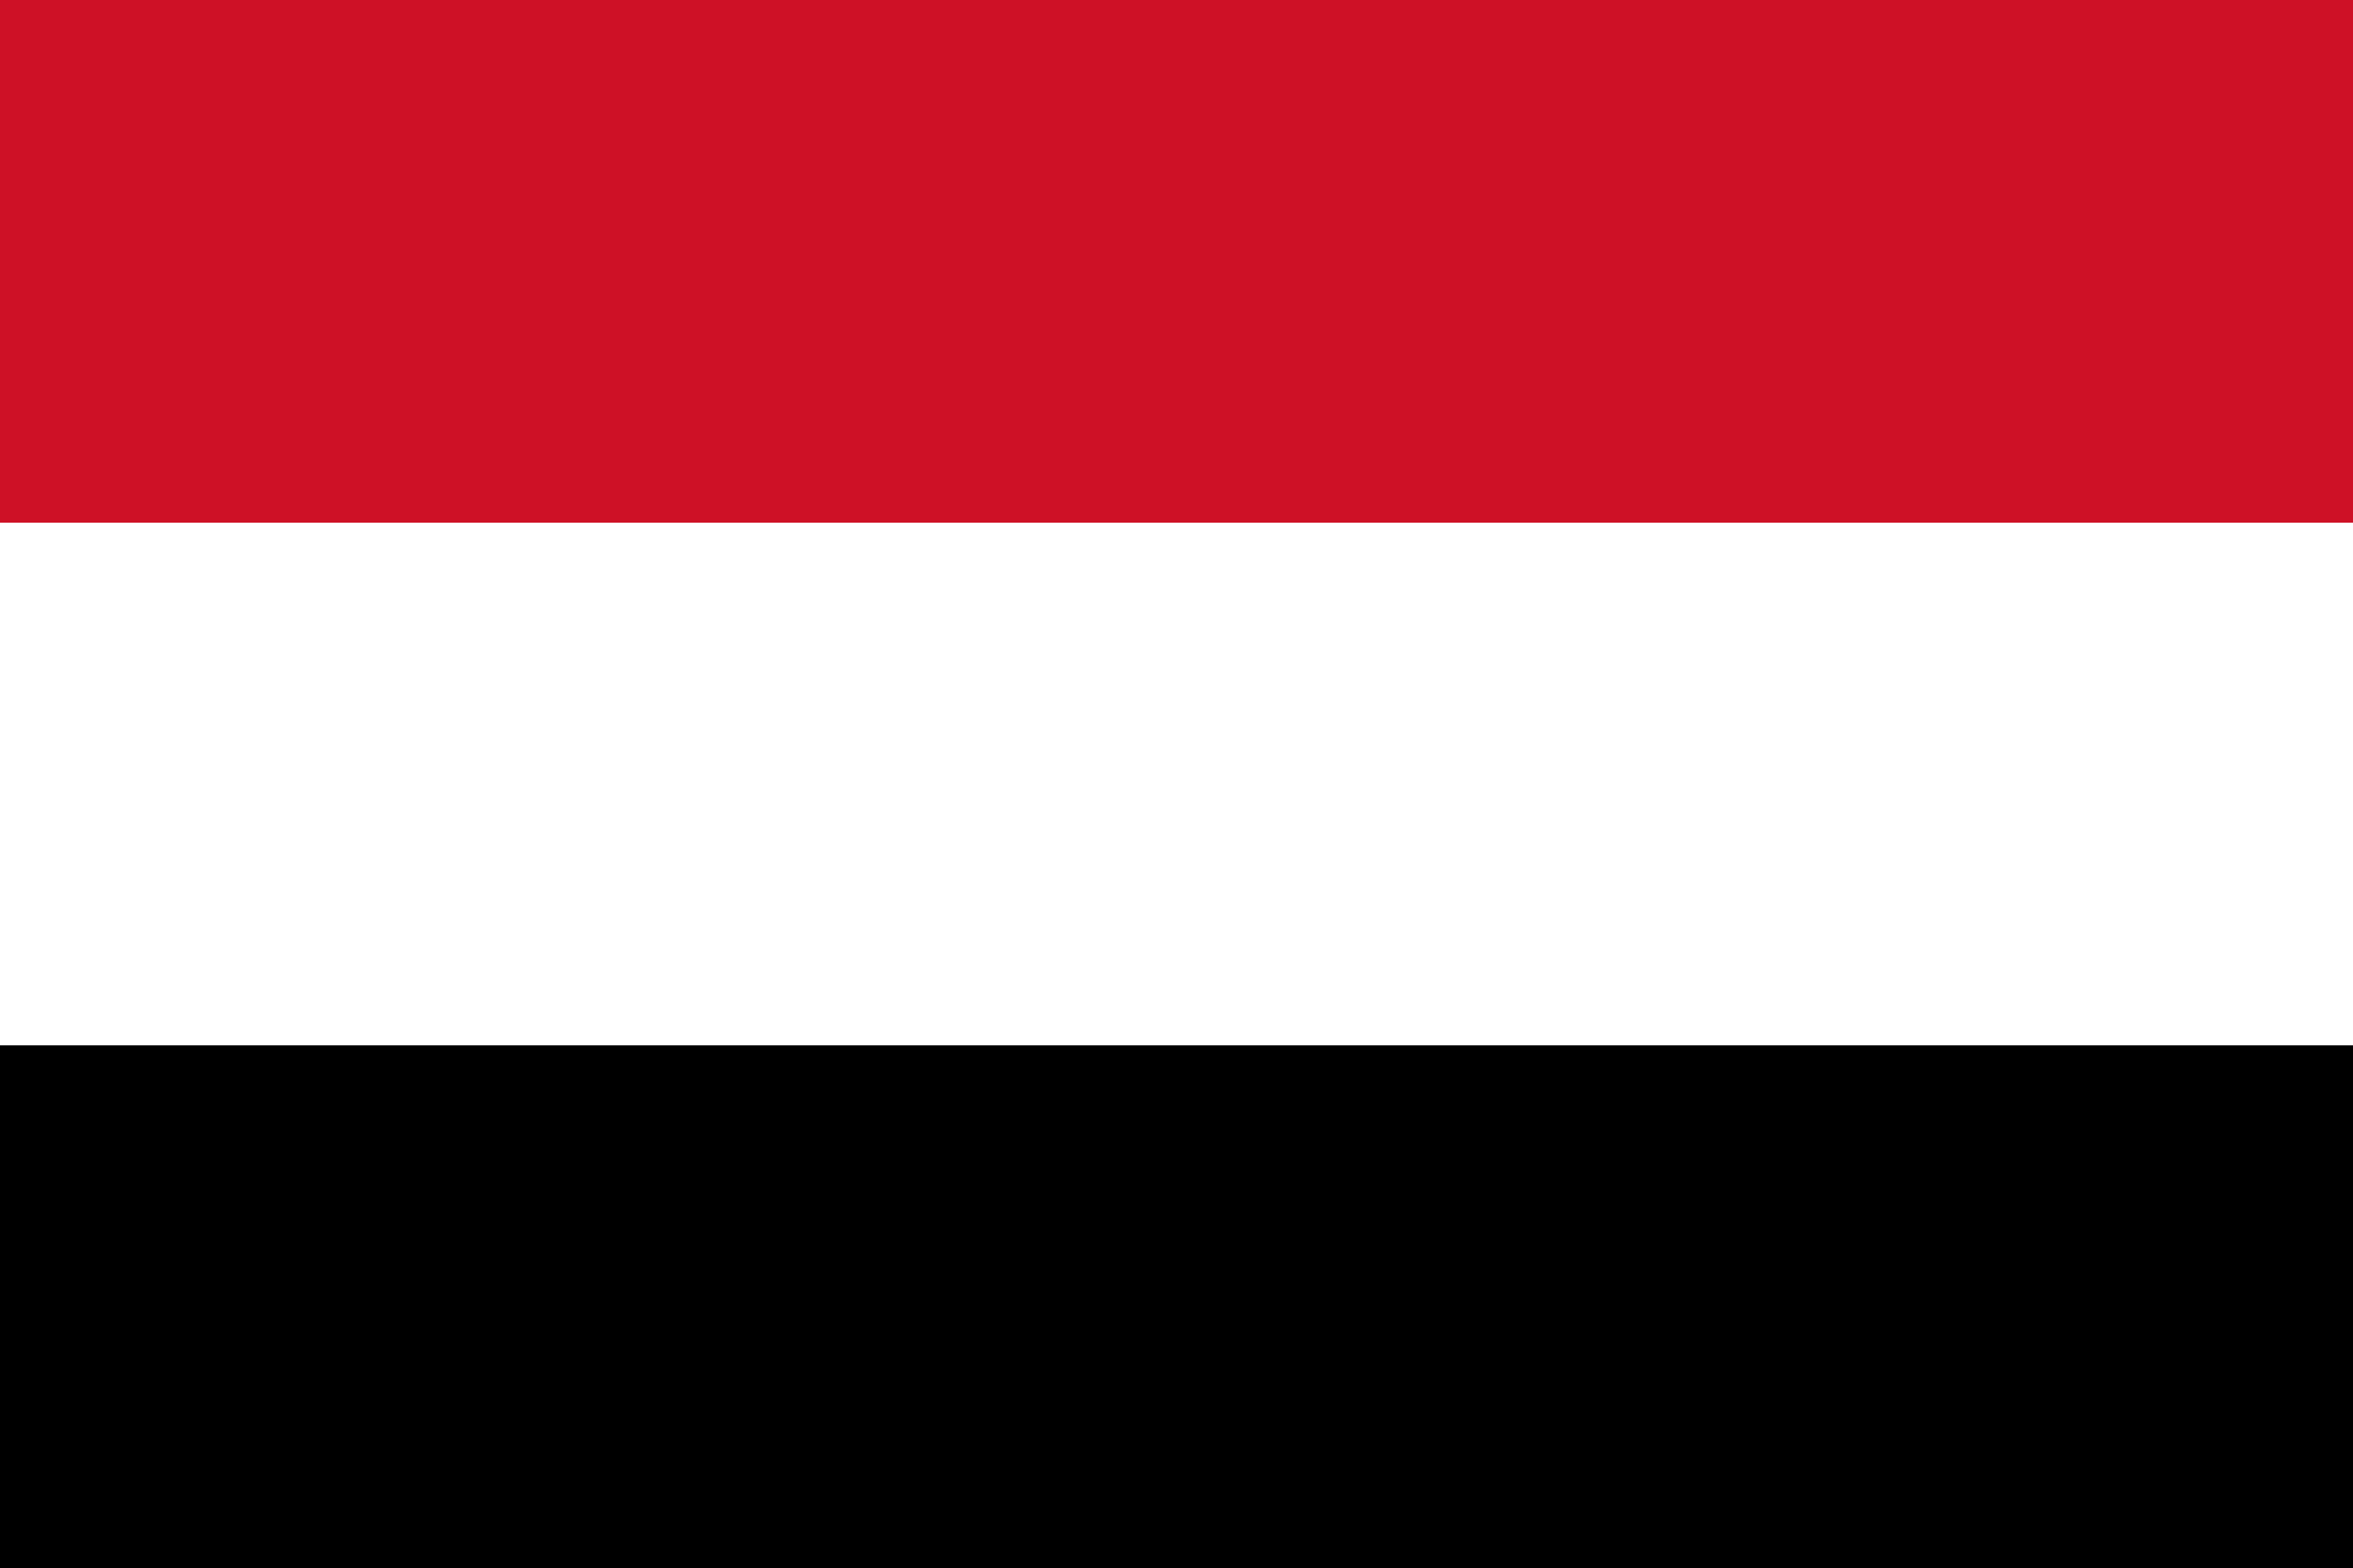 Yemen Flag Image - Free Download